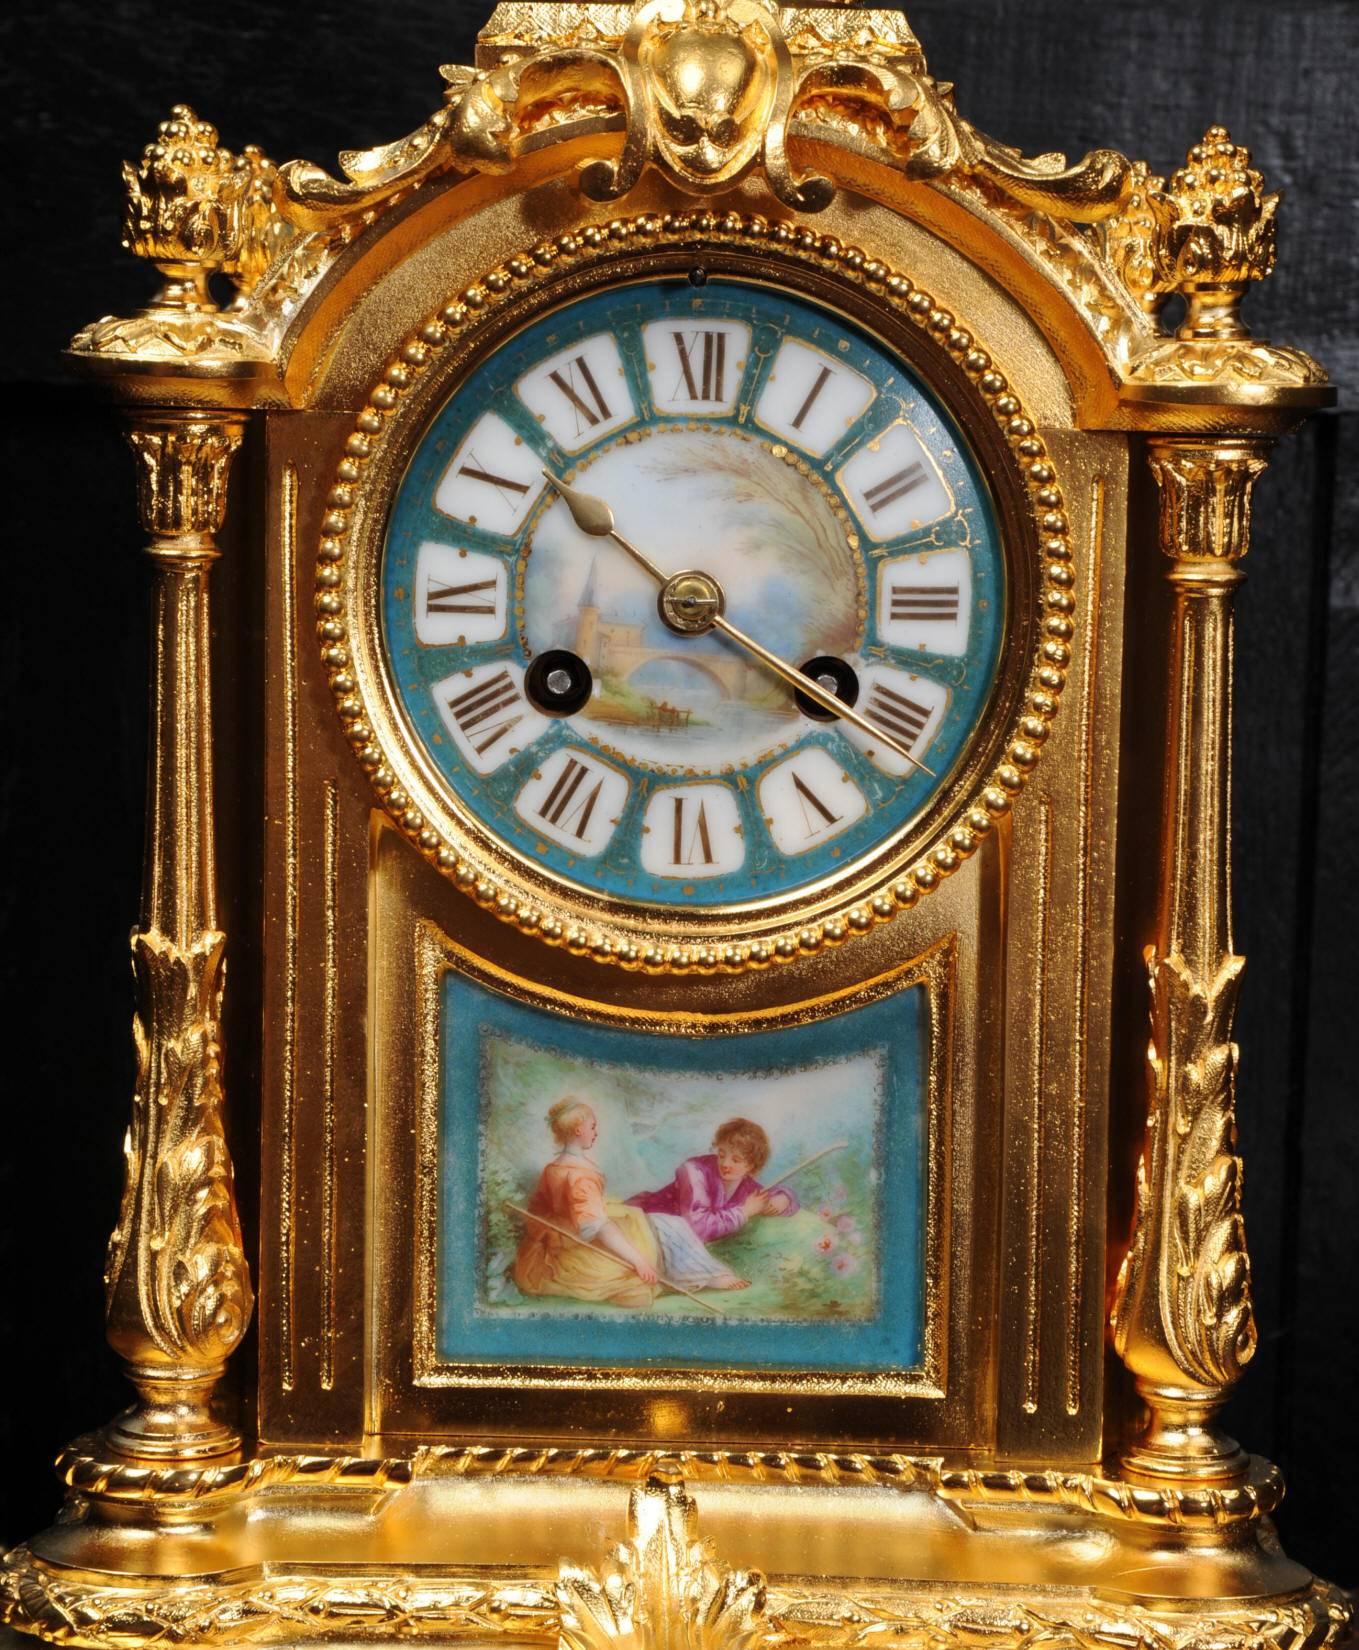 19th Century Ormolu and Sèvres Porcelain Boudoir Clock by Le Roy Et Fils, Paris